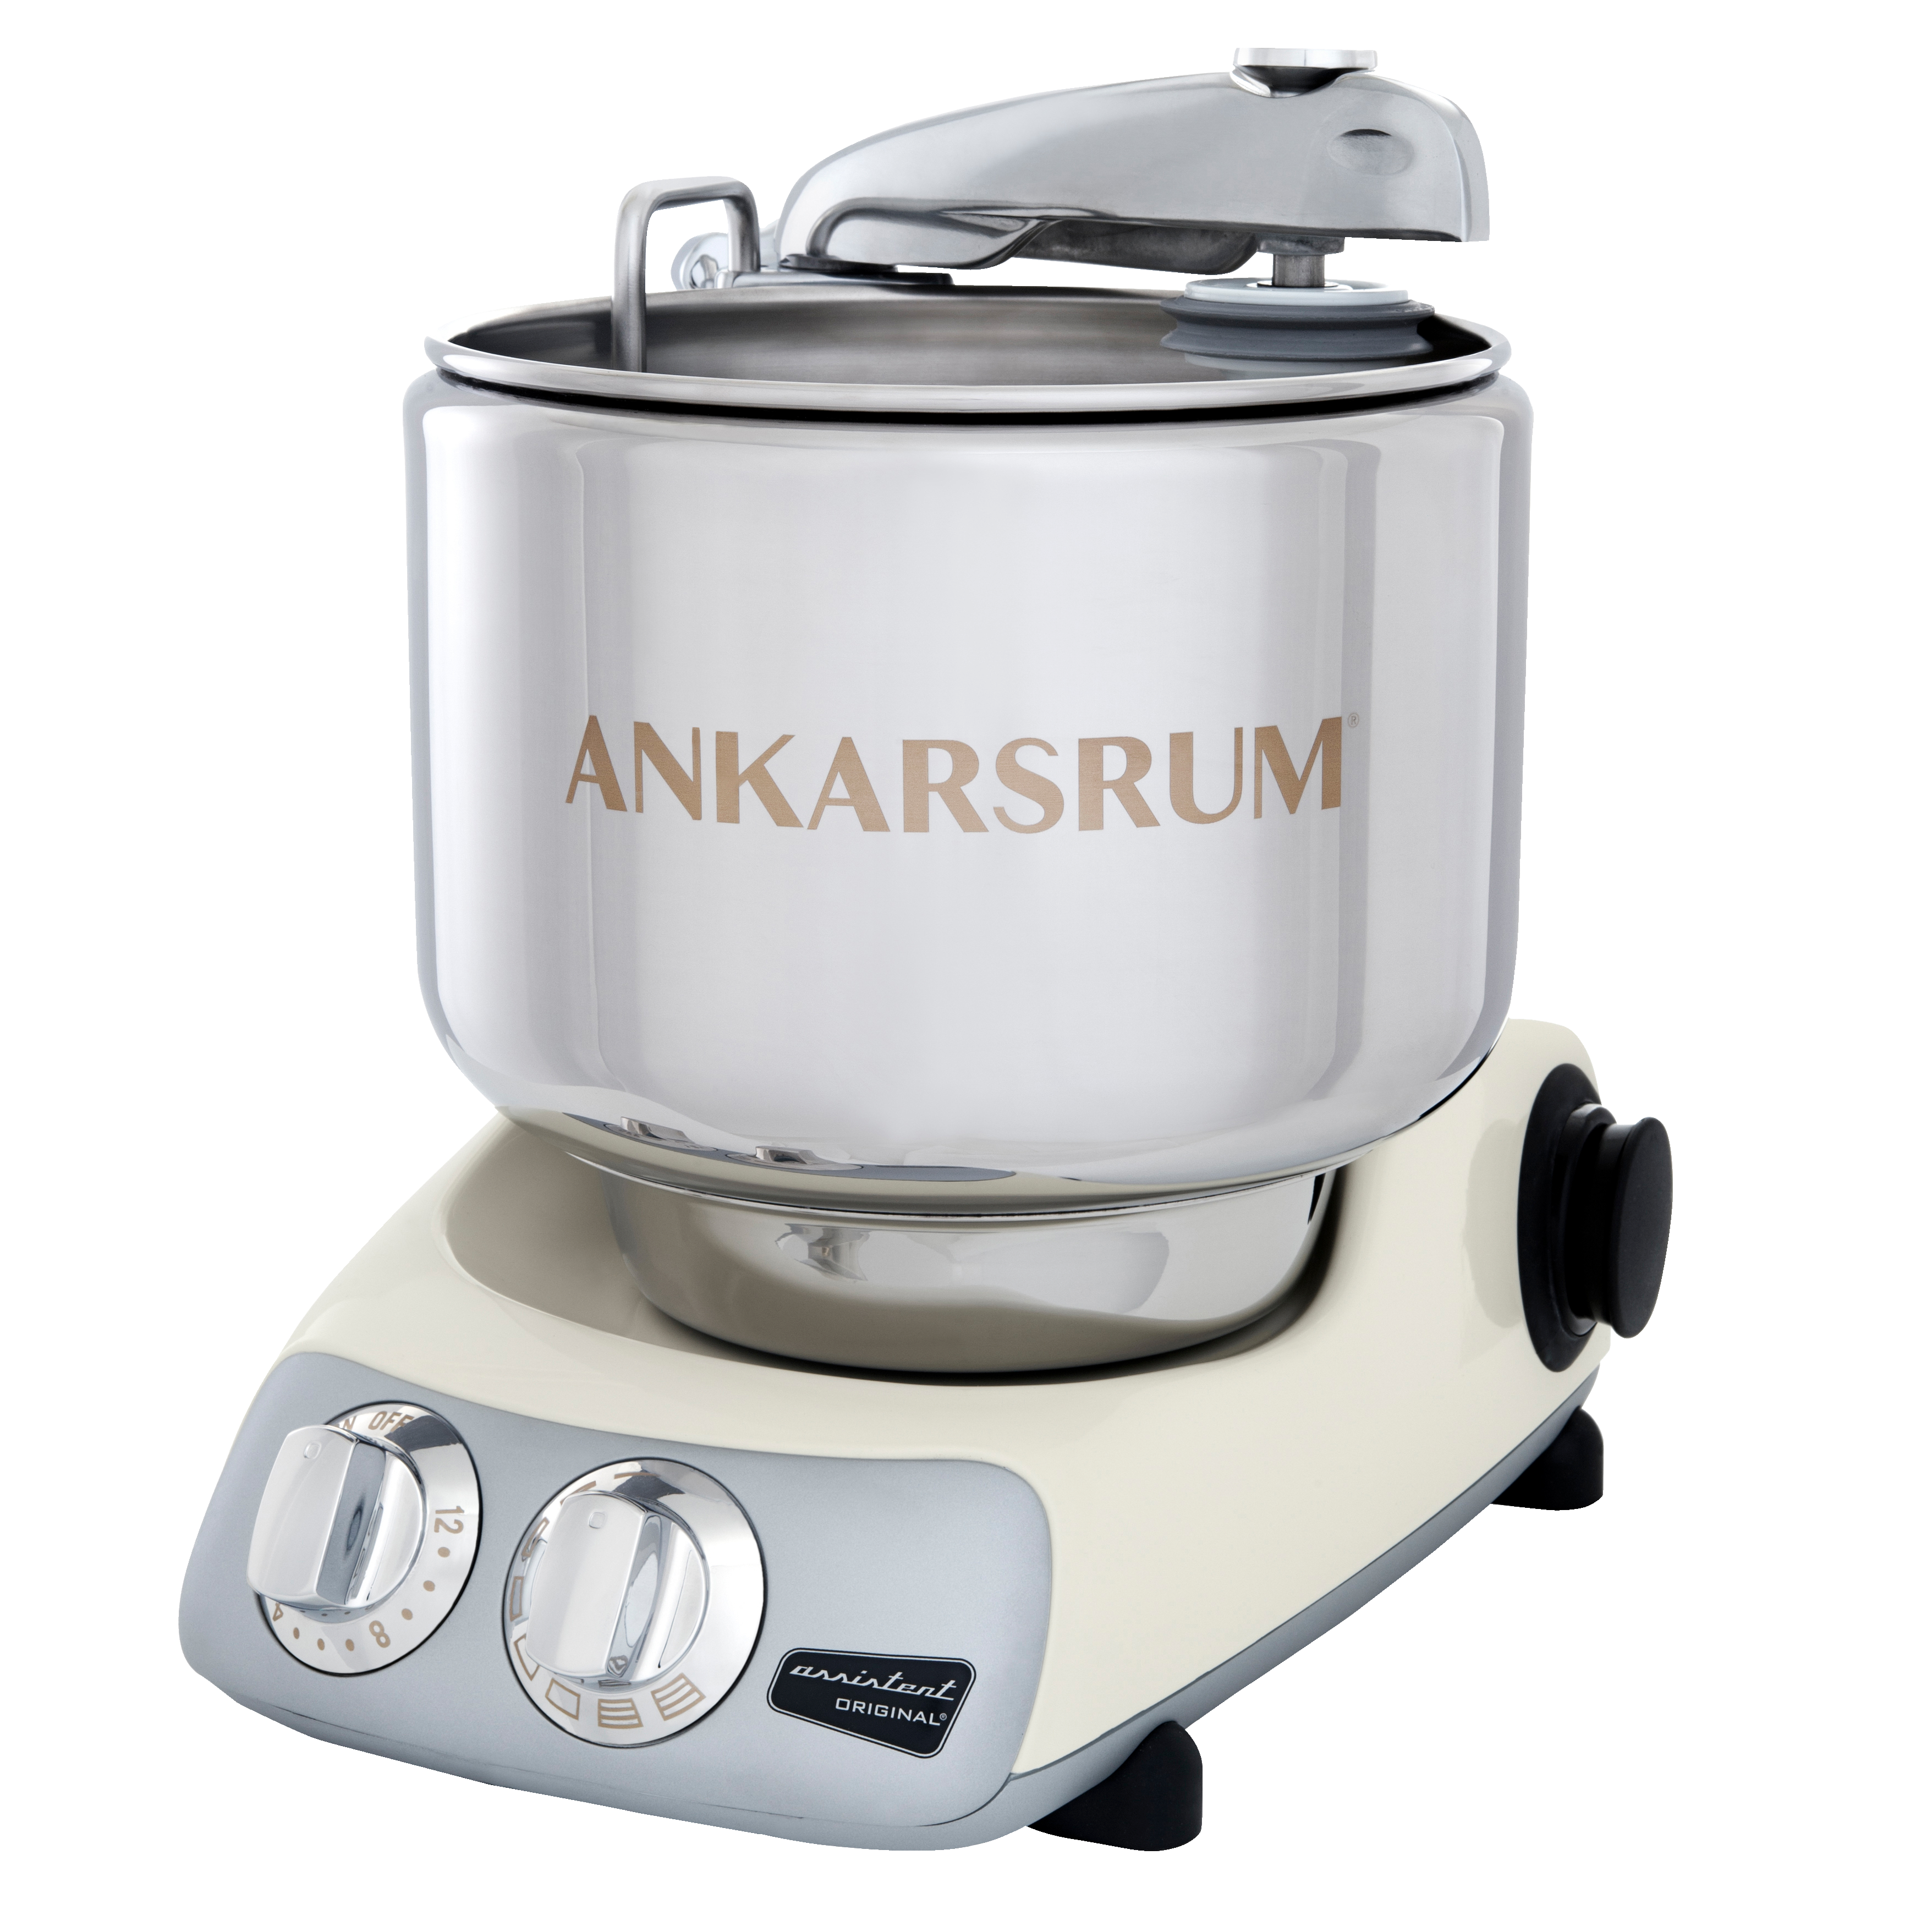 Ankarsrum Light Creme køkkenmaskine AKM6230 (creme) - Køkkenudstyr ...